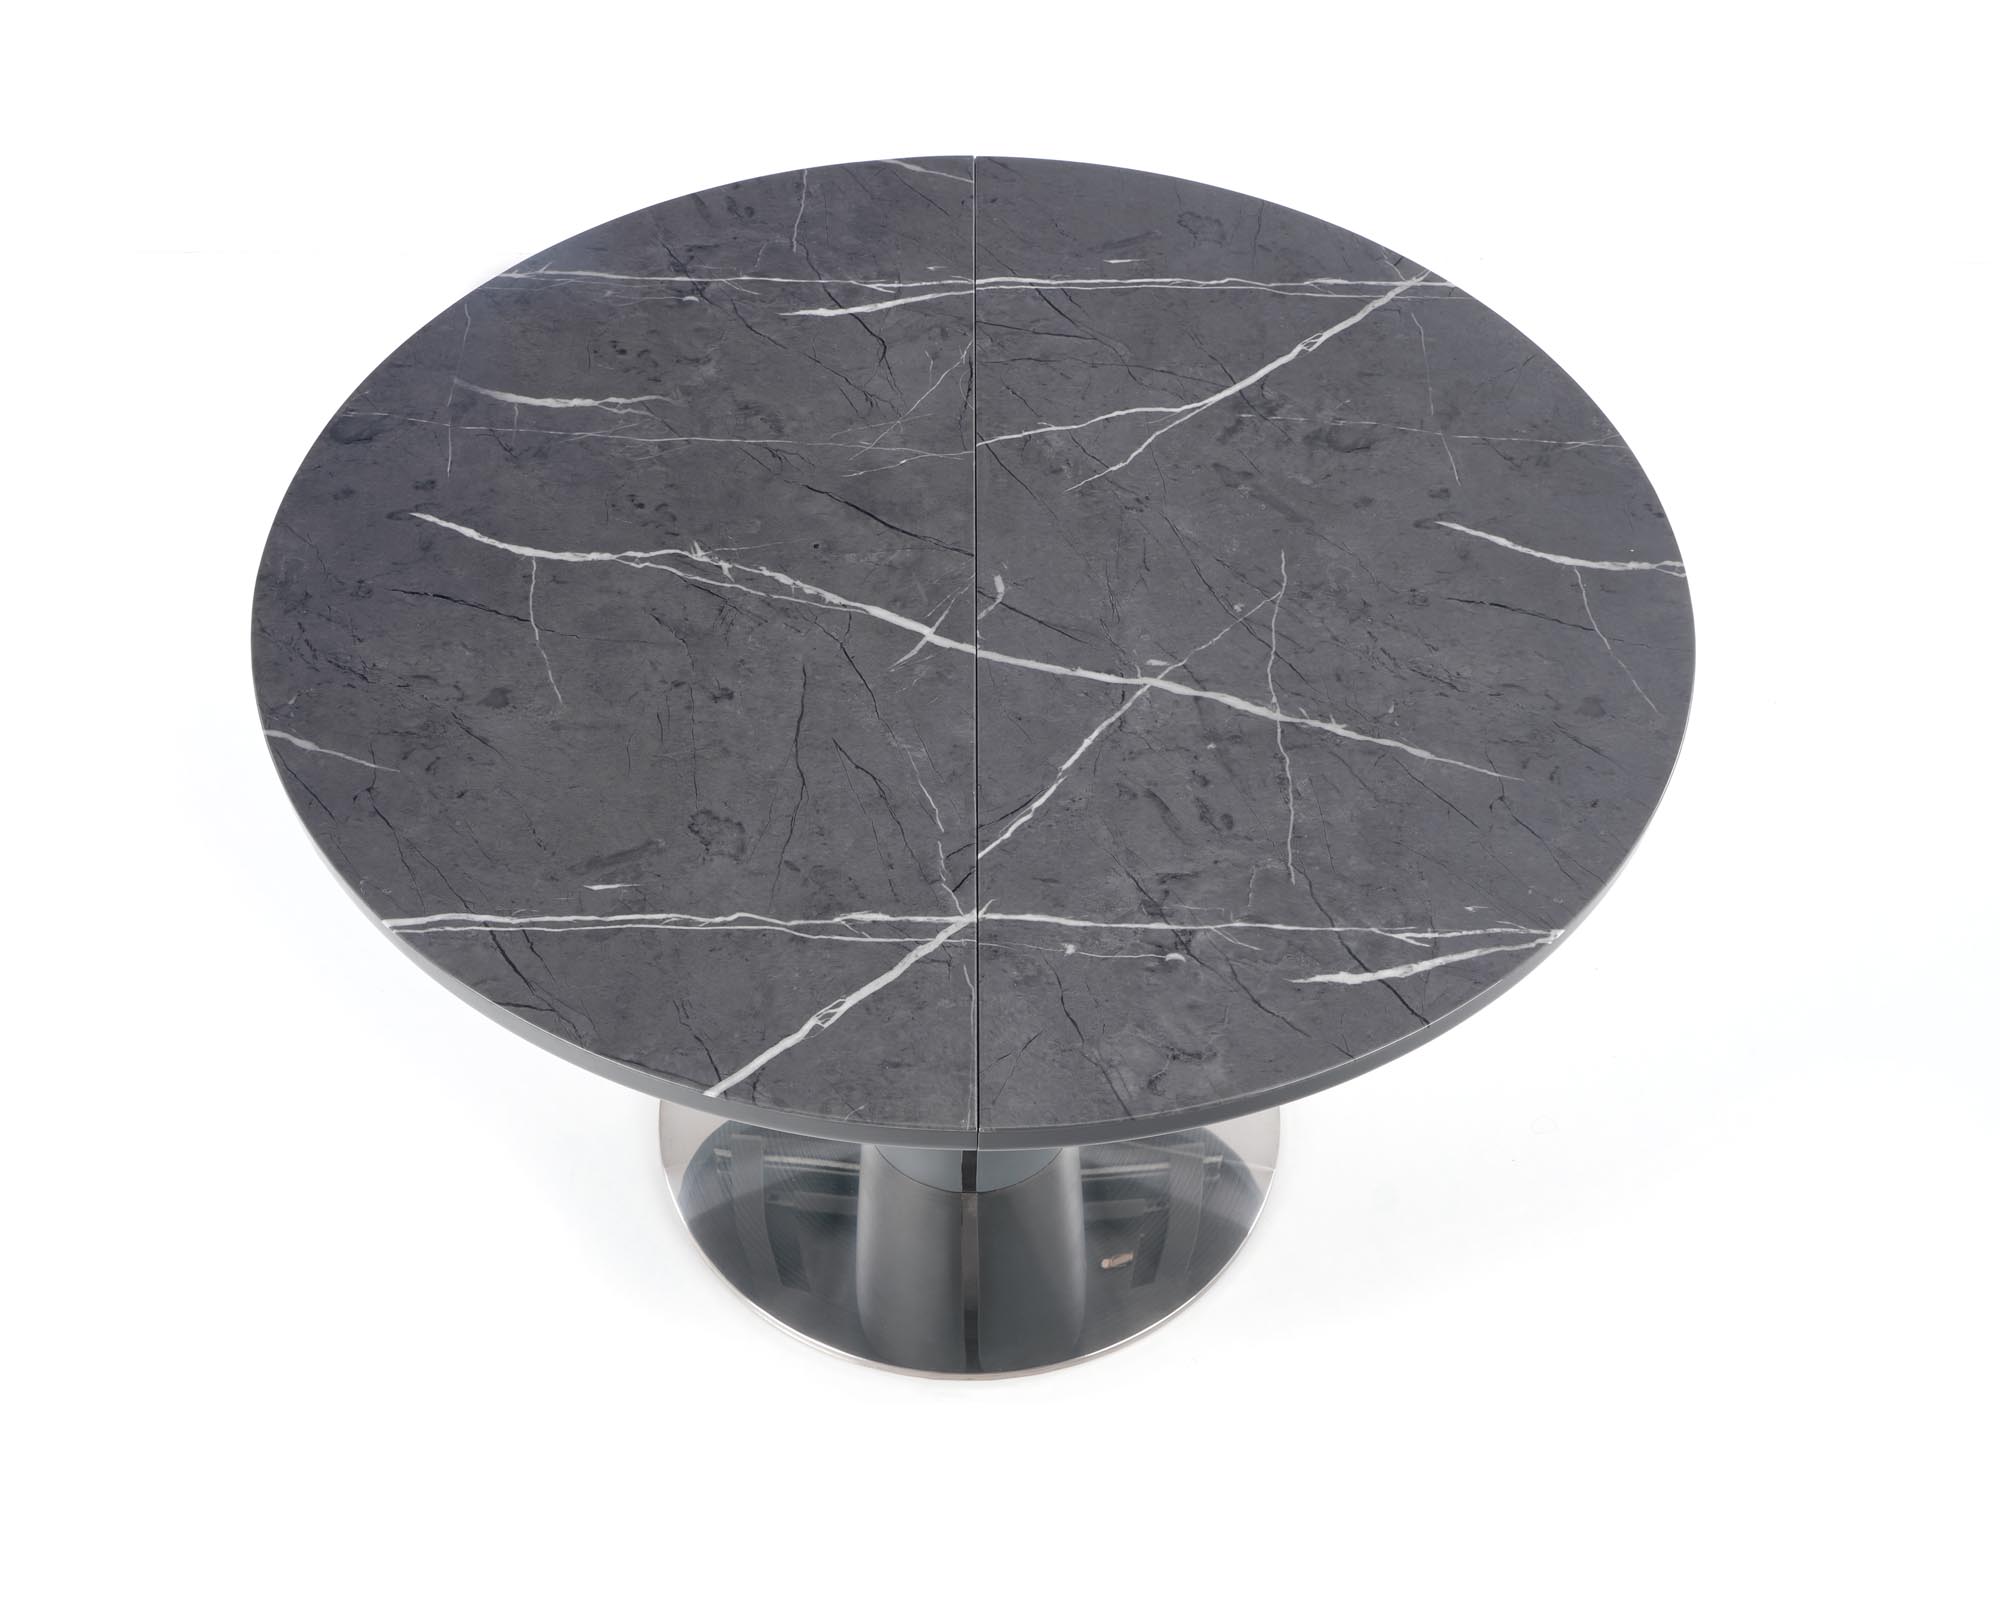 RICARDO összecsukható asztal - hamvas márvány ricardo stůl rozkladany Popelový mramor